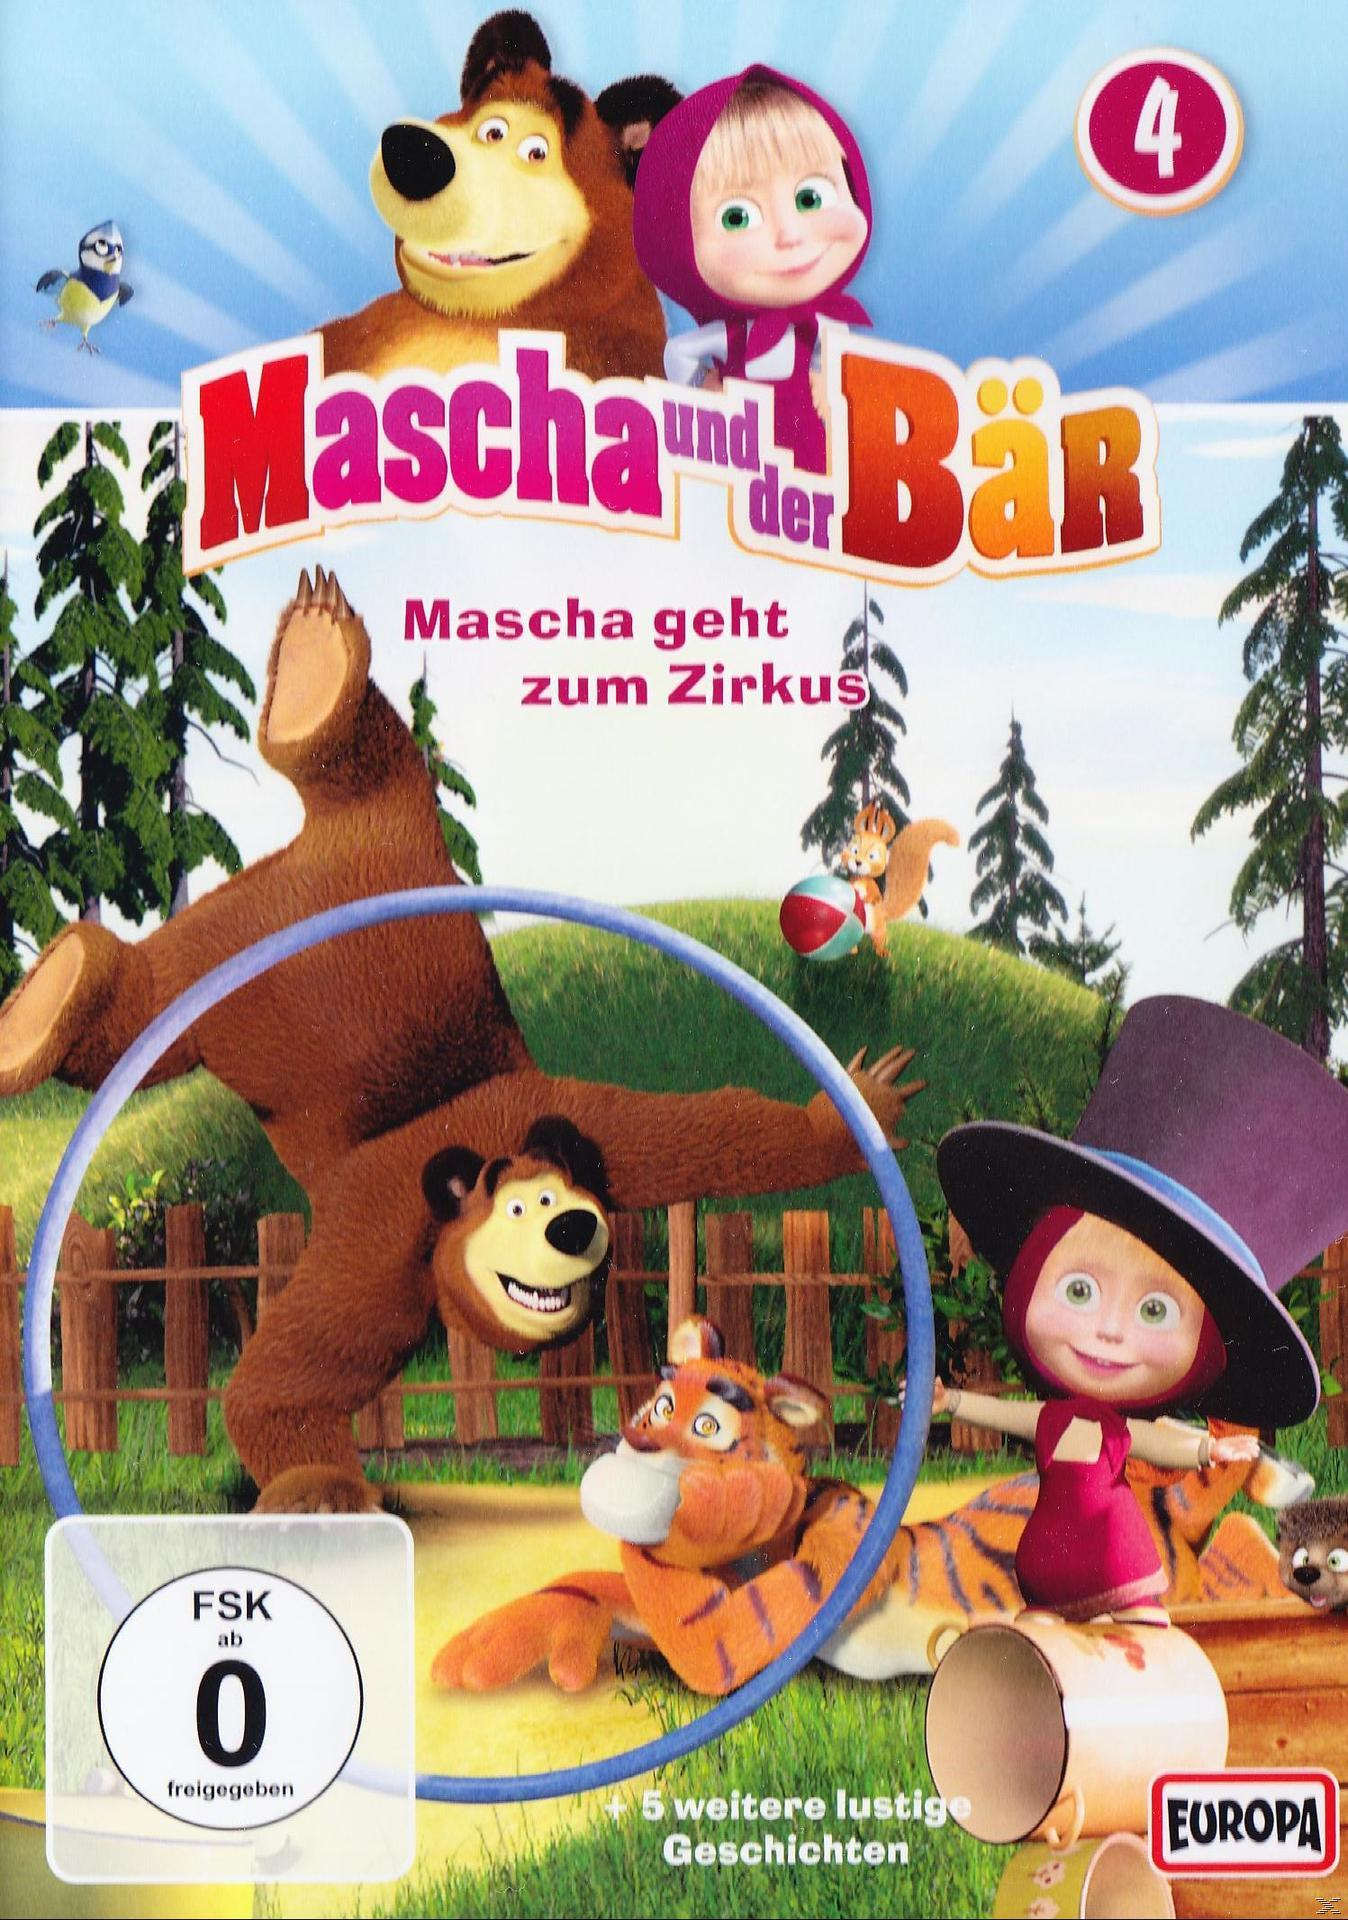 DVD Bär, und der Vol. 4 Mascha